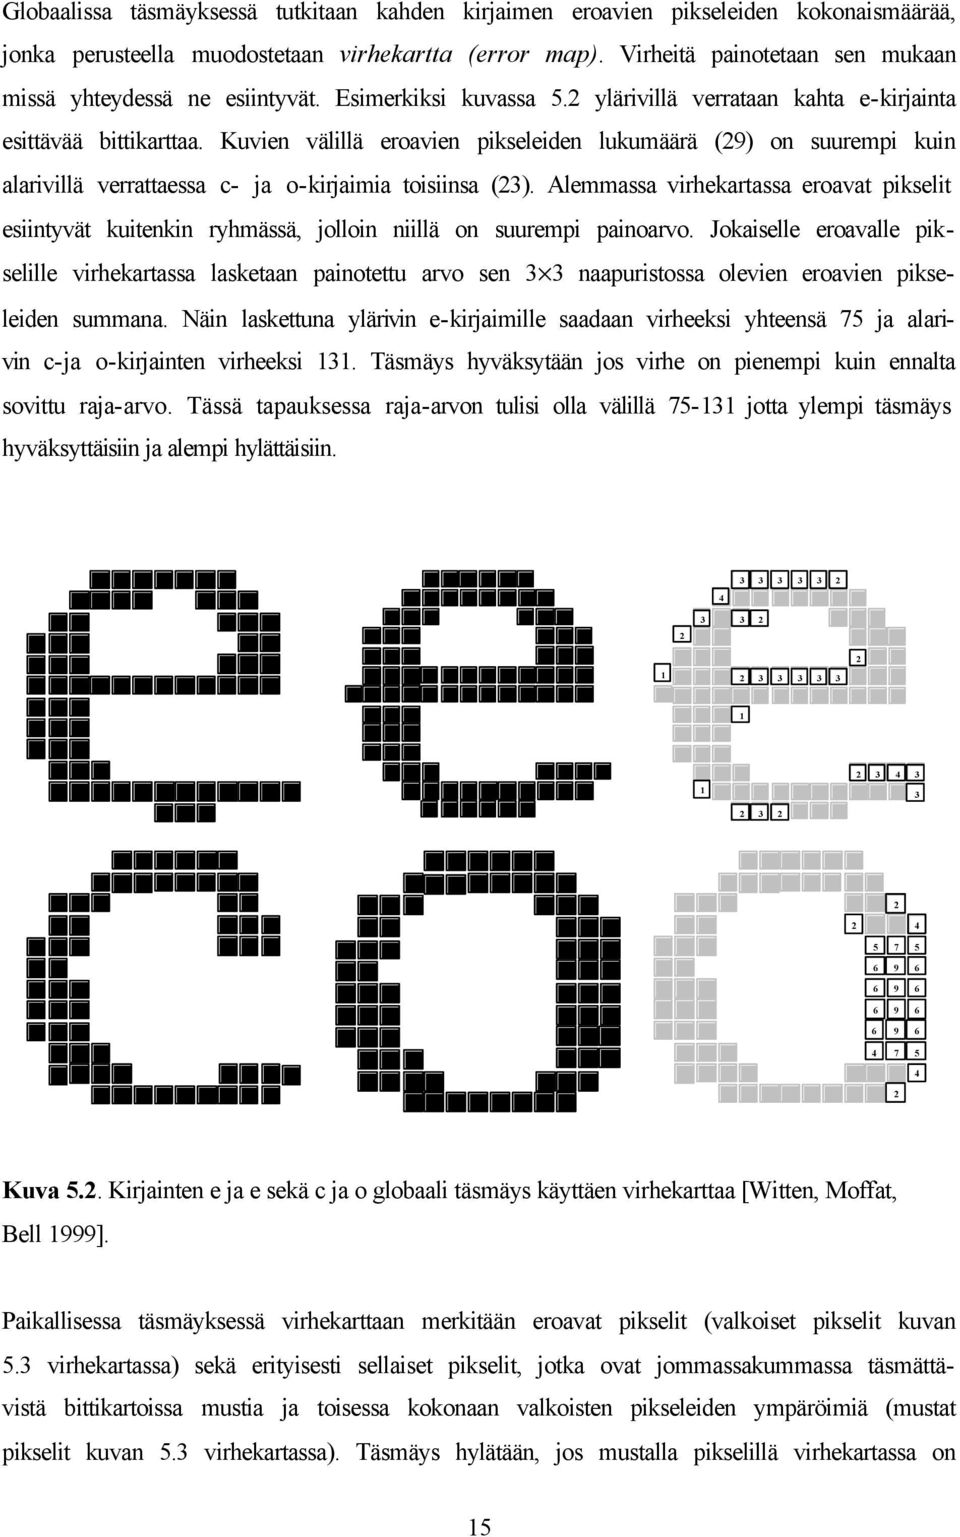 Kuvien välillä eroavien pikseleiden lukumäärä (29) on suurempi kuin alarivillä verrattaessa c- ja o-kirjaimia toisiinsa (2).